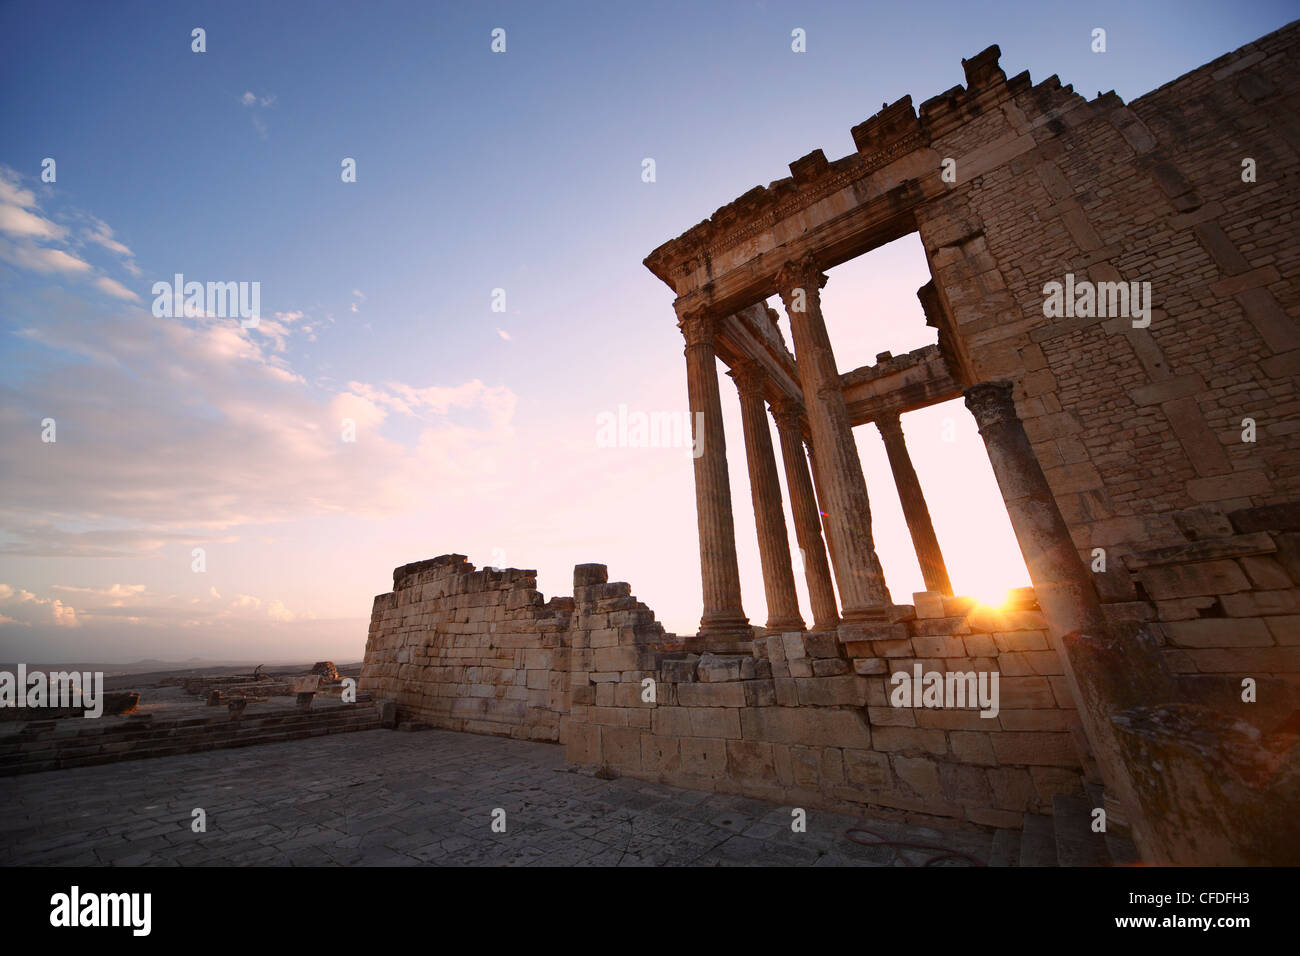 Le Capitole au coucher du soleil dans les ruines romaines de Dougga, site archéologique, site du patrimoine mondial de l'UNESCO, la Tunisie, l'Afrique du Nord, Afrique Banque D'Images